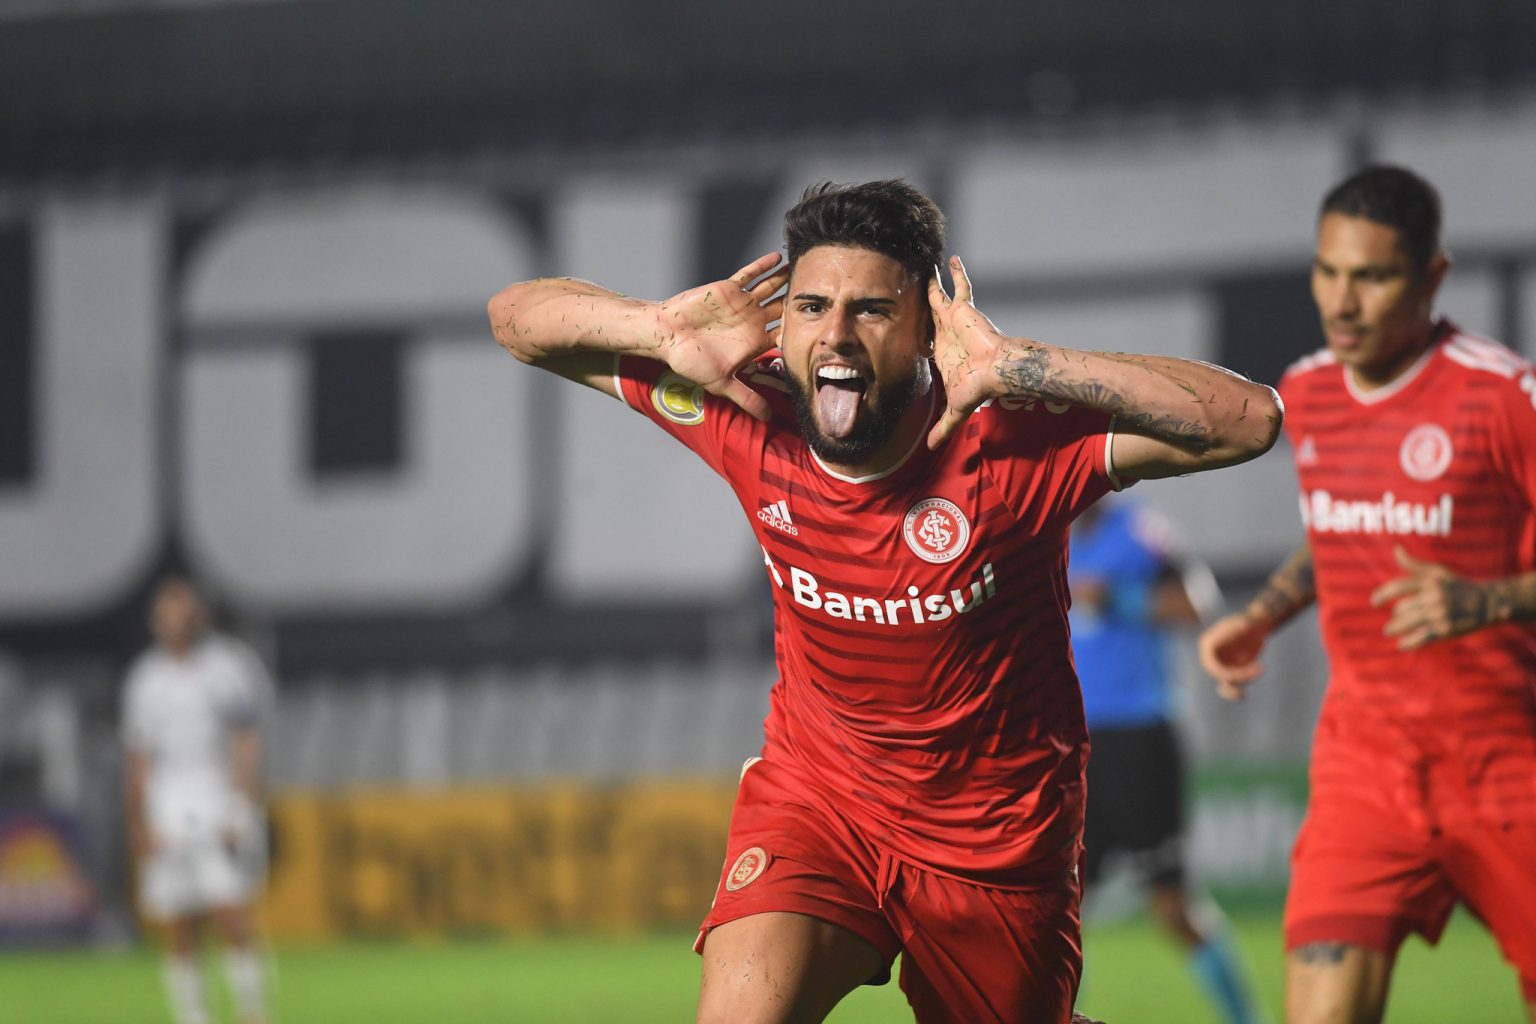 Yuri Alberto fez o gol salvador no fim da partida. (Foto: Ricardo Duarte/SC Internacional)